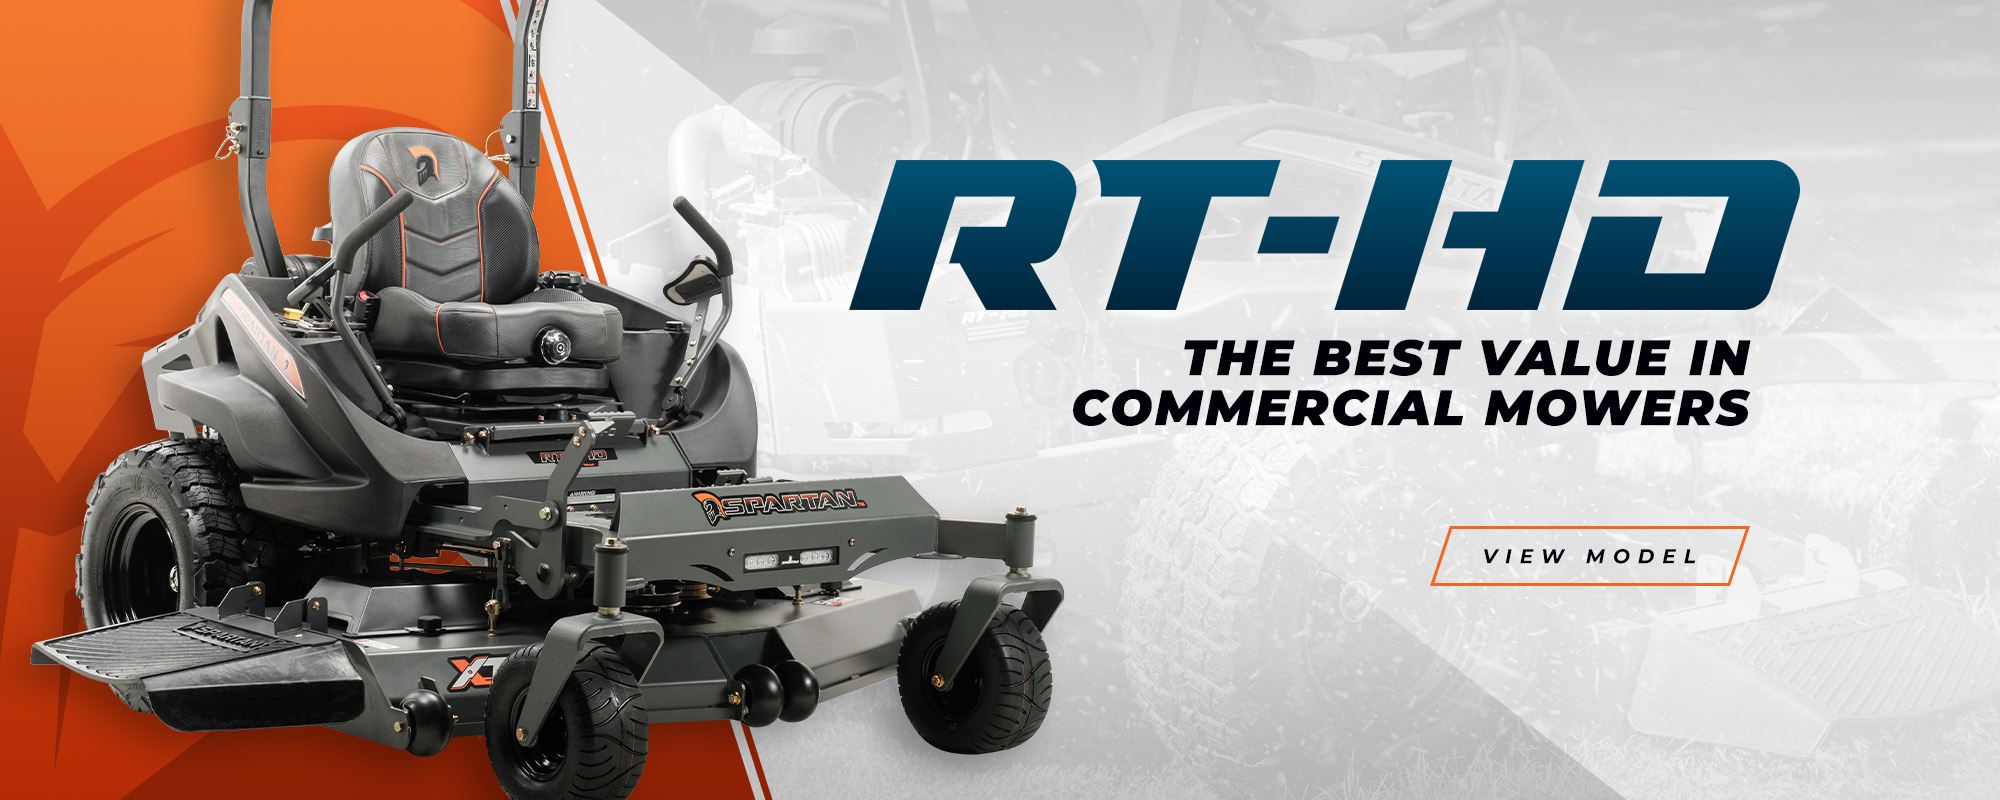 RTHD mower ad.